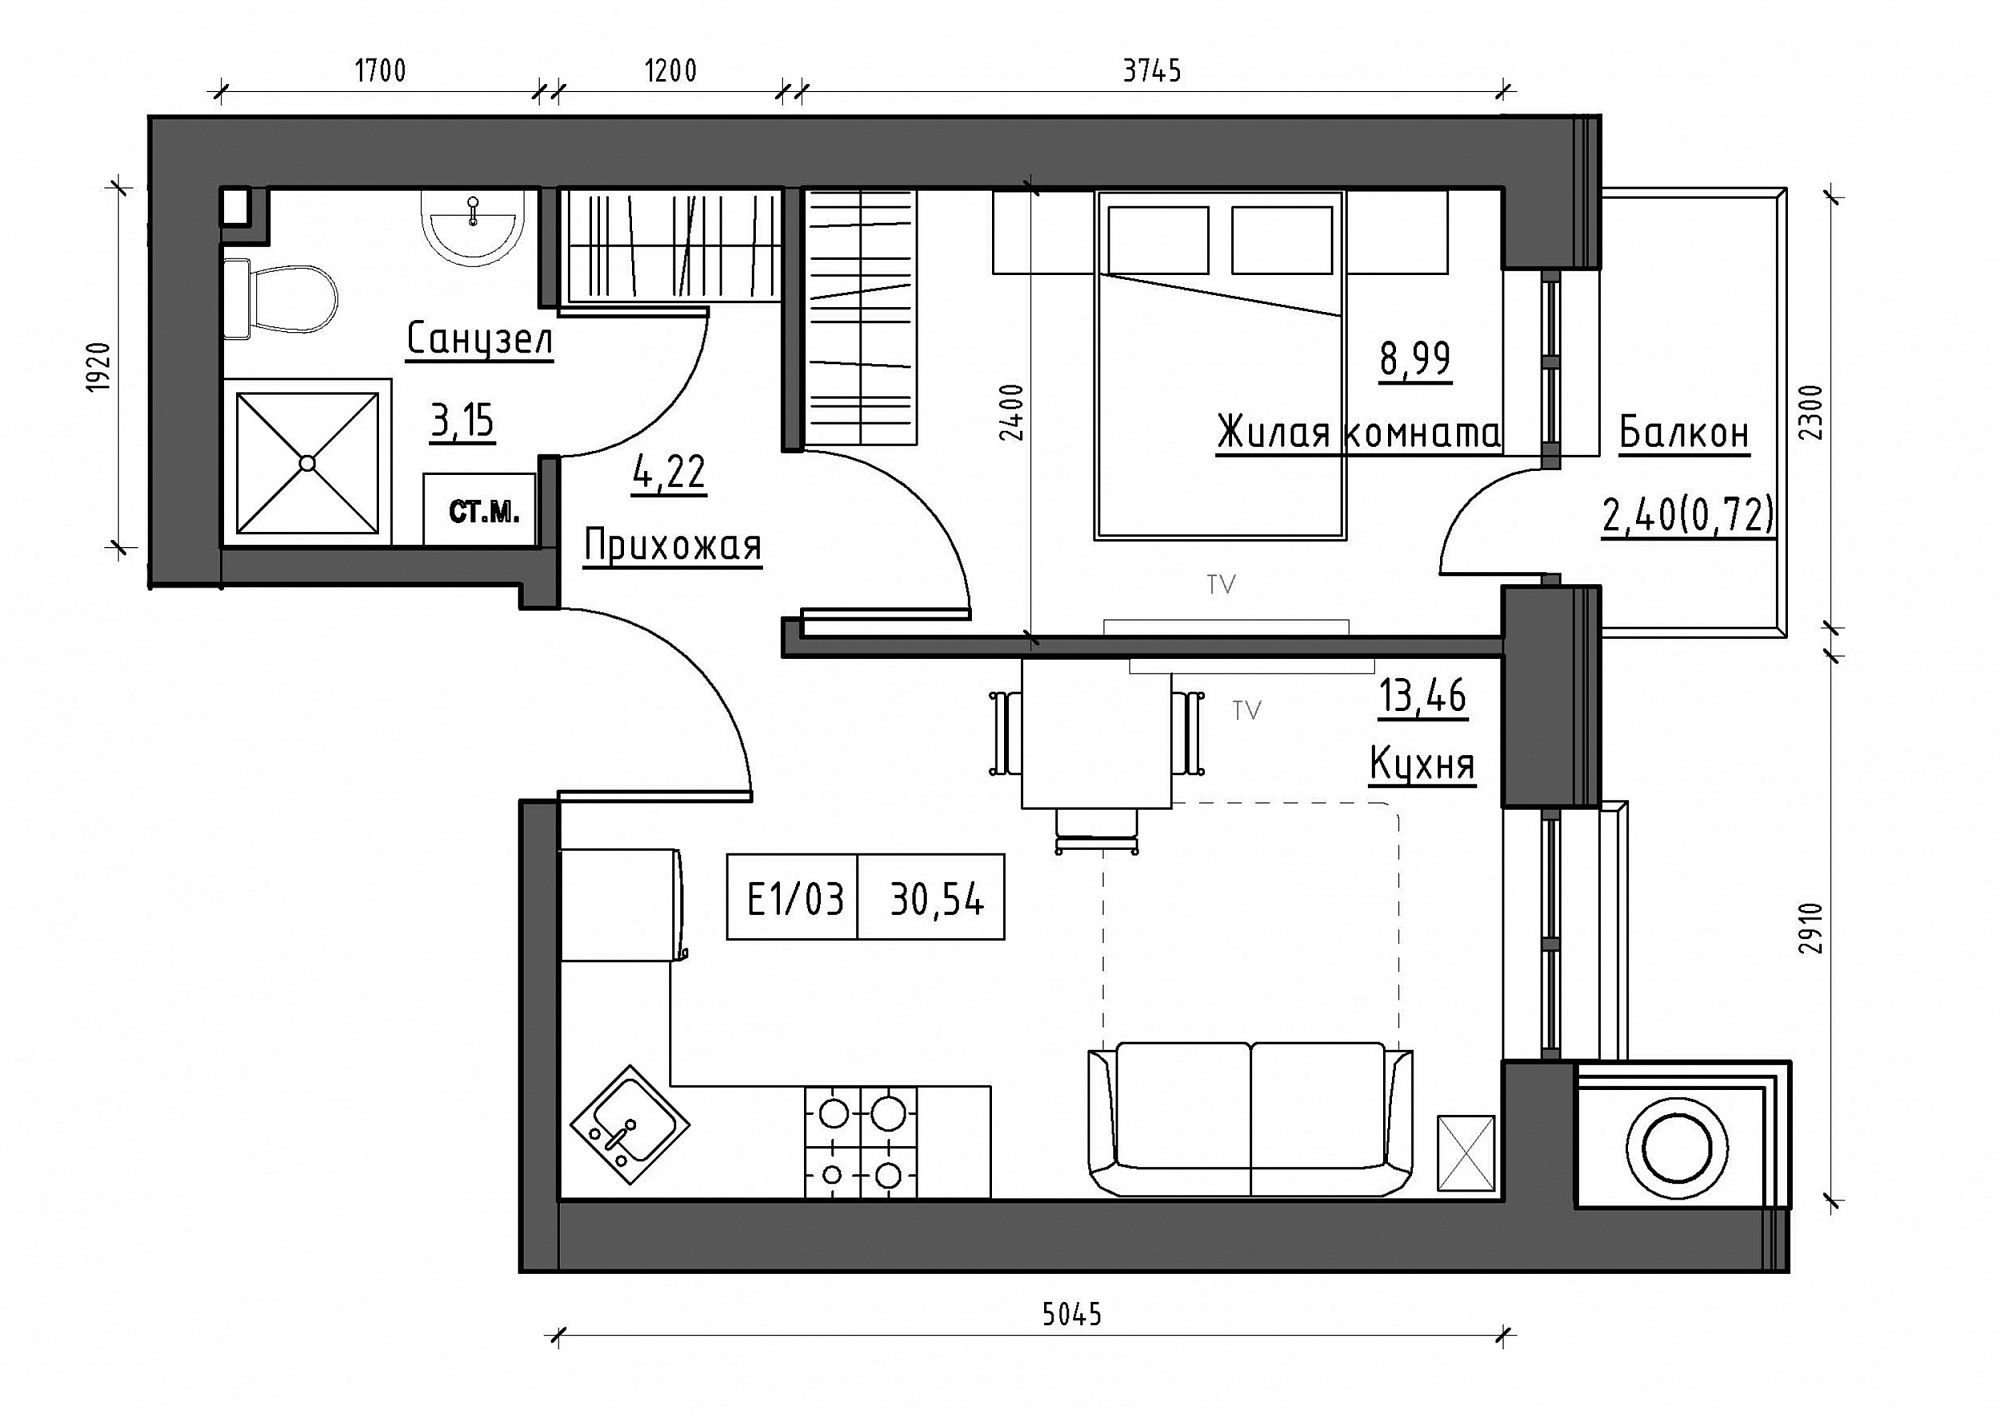 Планування 1-к квартира площею 30.58м2, KS-012-02/0013.